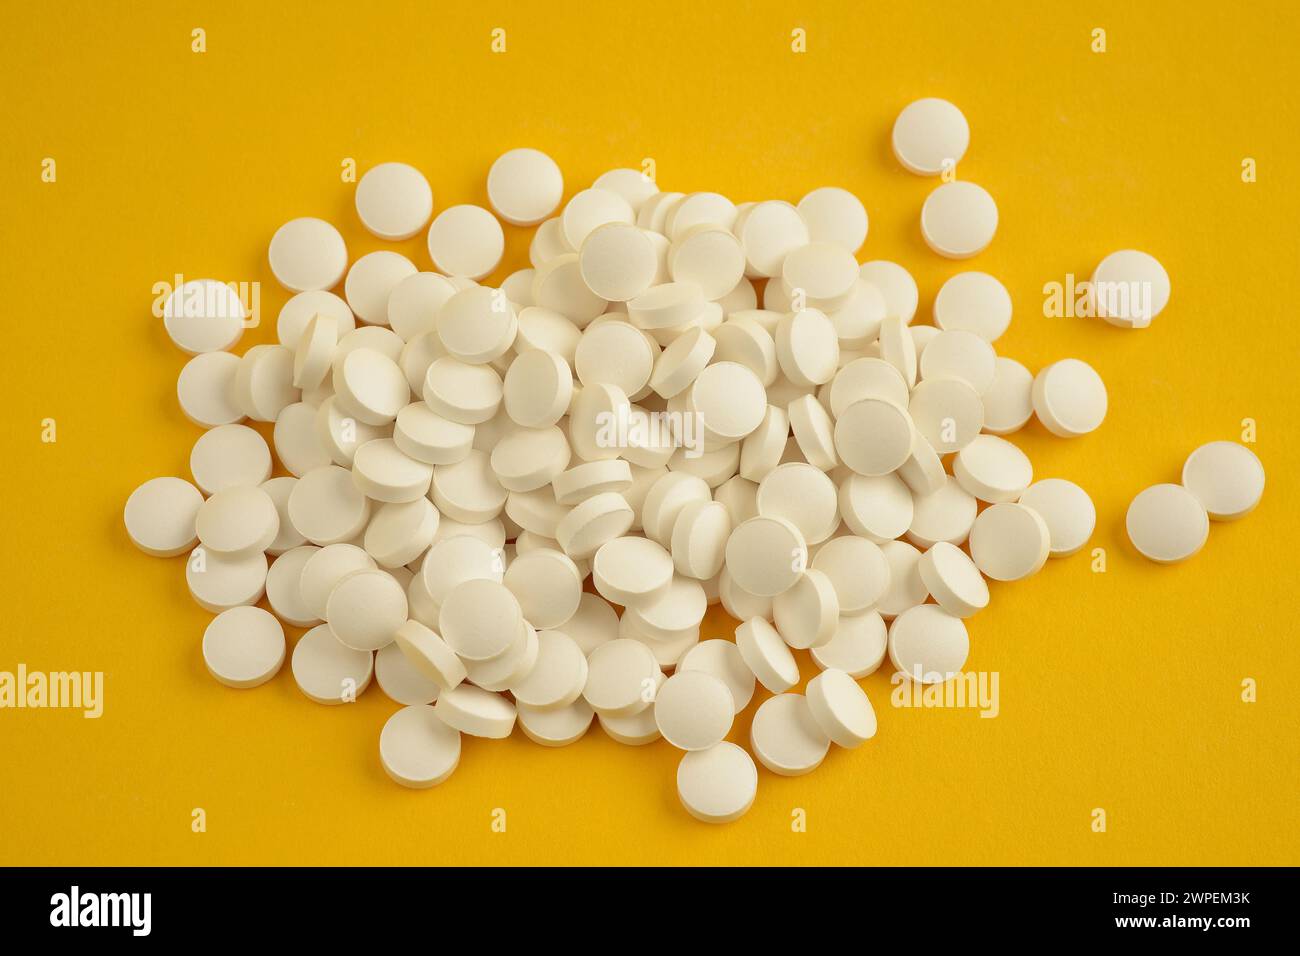 Nahaufnahme von oben eines Stapels weißer, runder Vitamin-D-Tabletten, der lose auf gelbem Hintergrund liegt Stockfoto